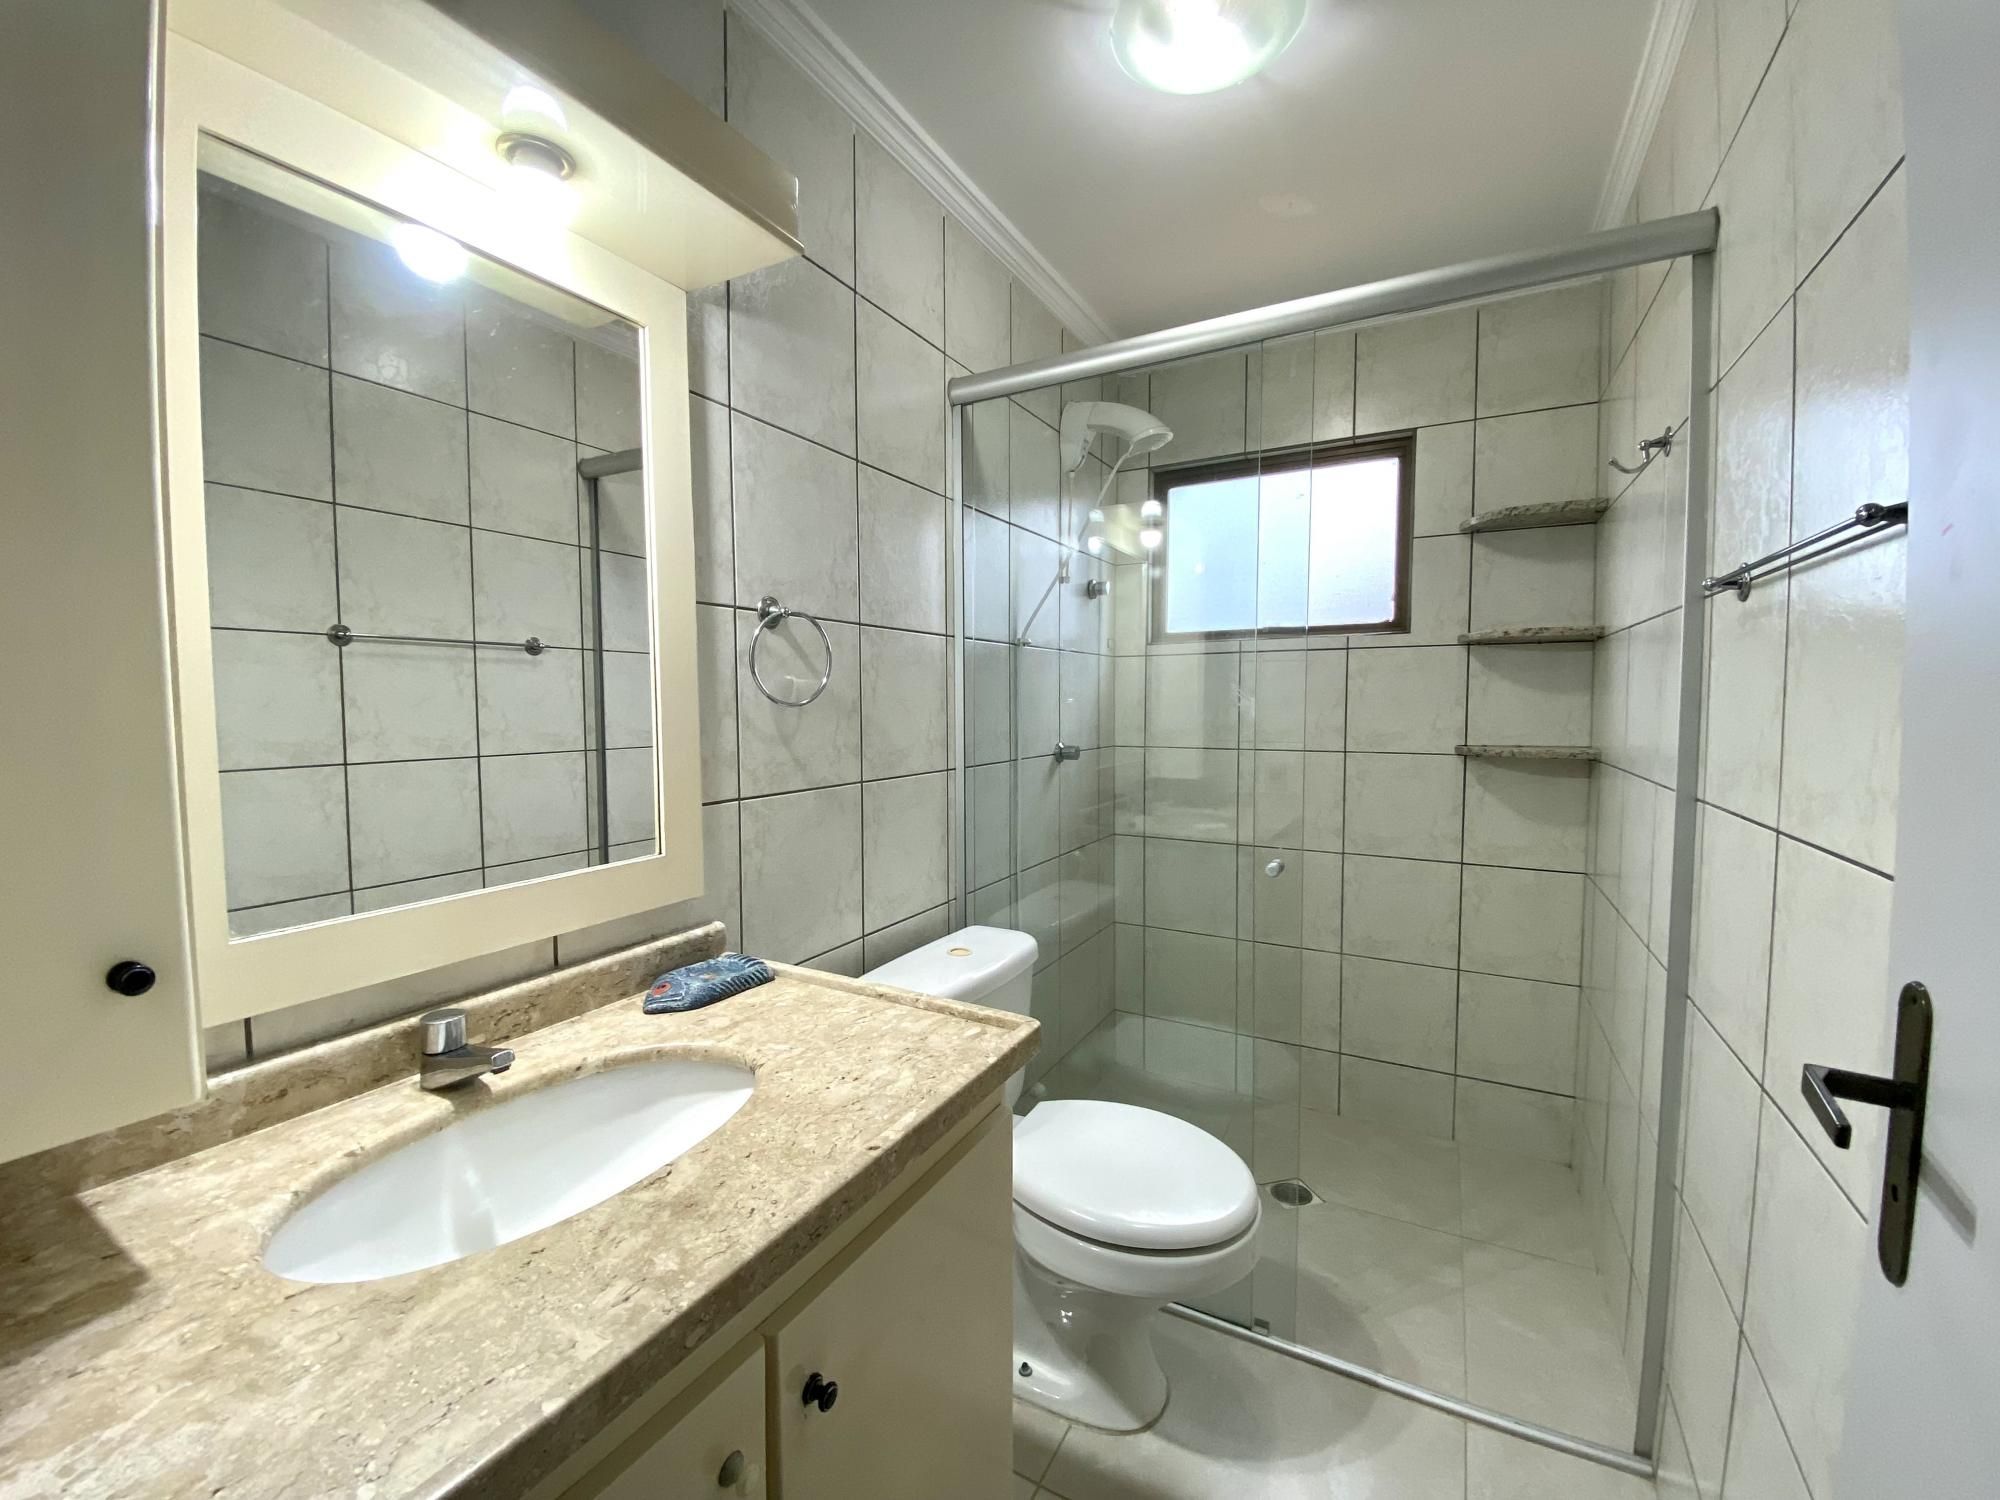 Cobertura com 5 Dormitórios à venda, 243 m² por R$ 1.500.000,00